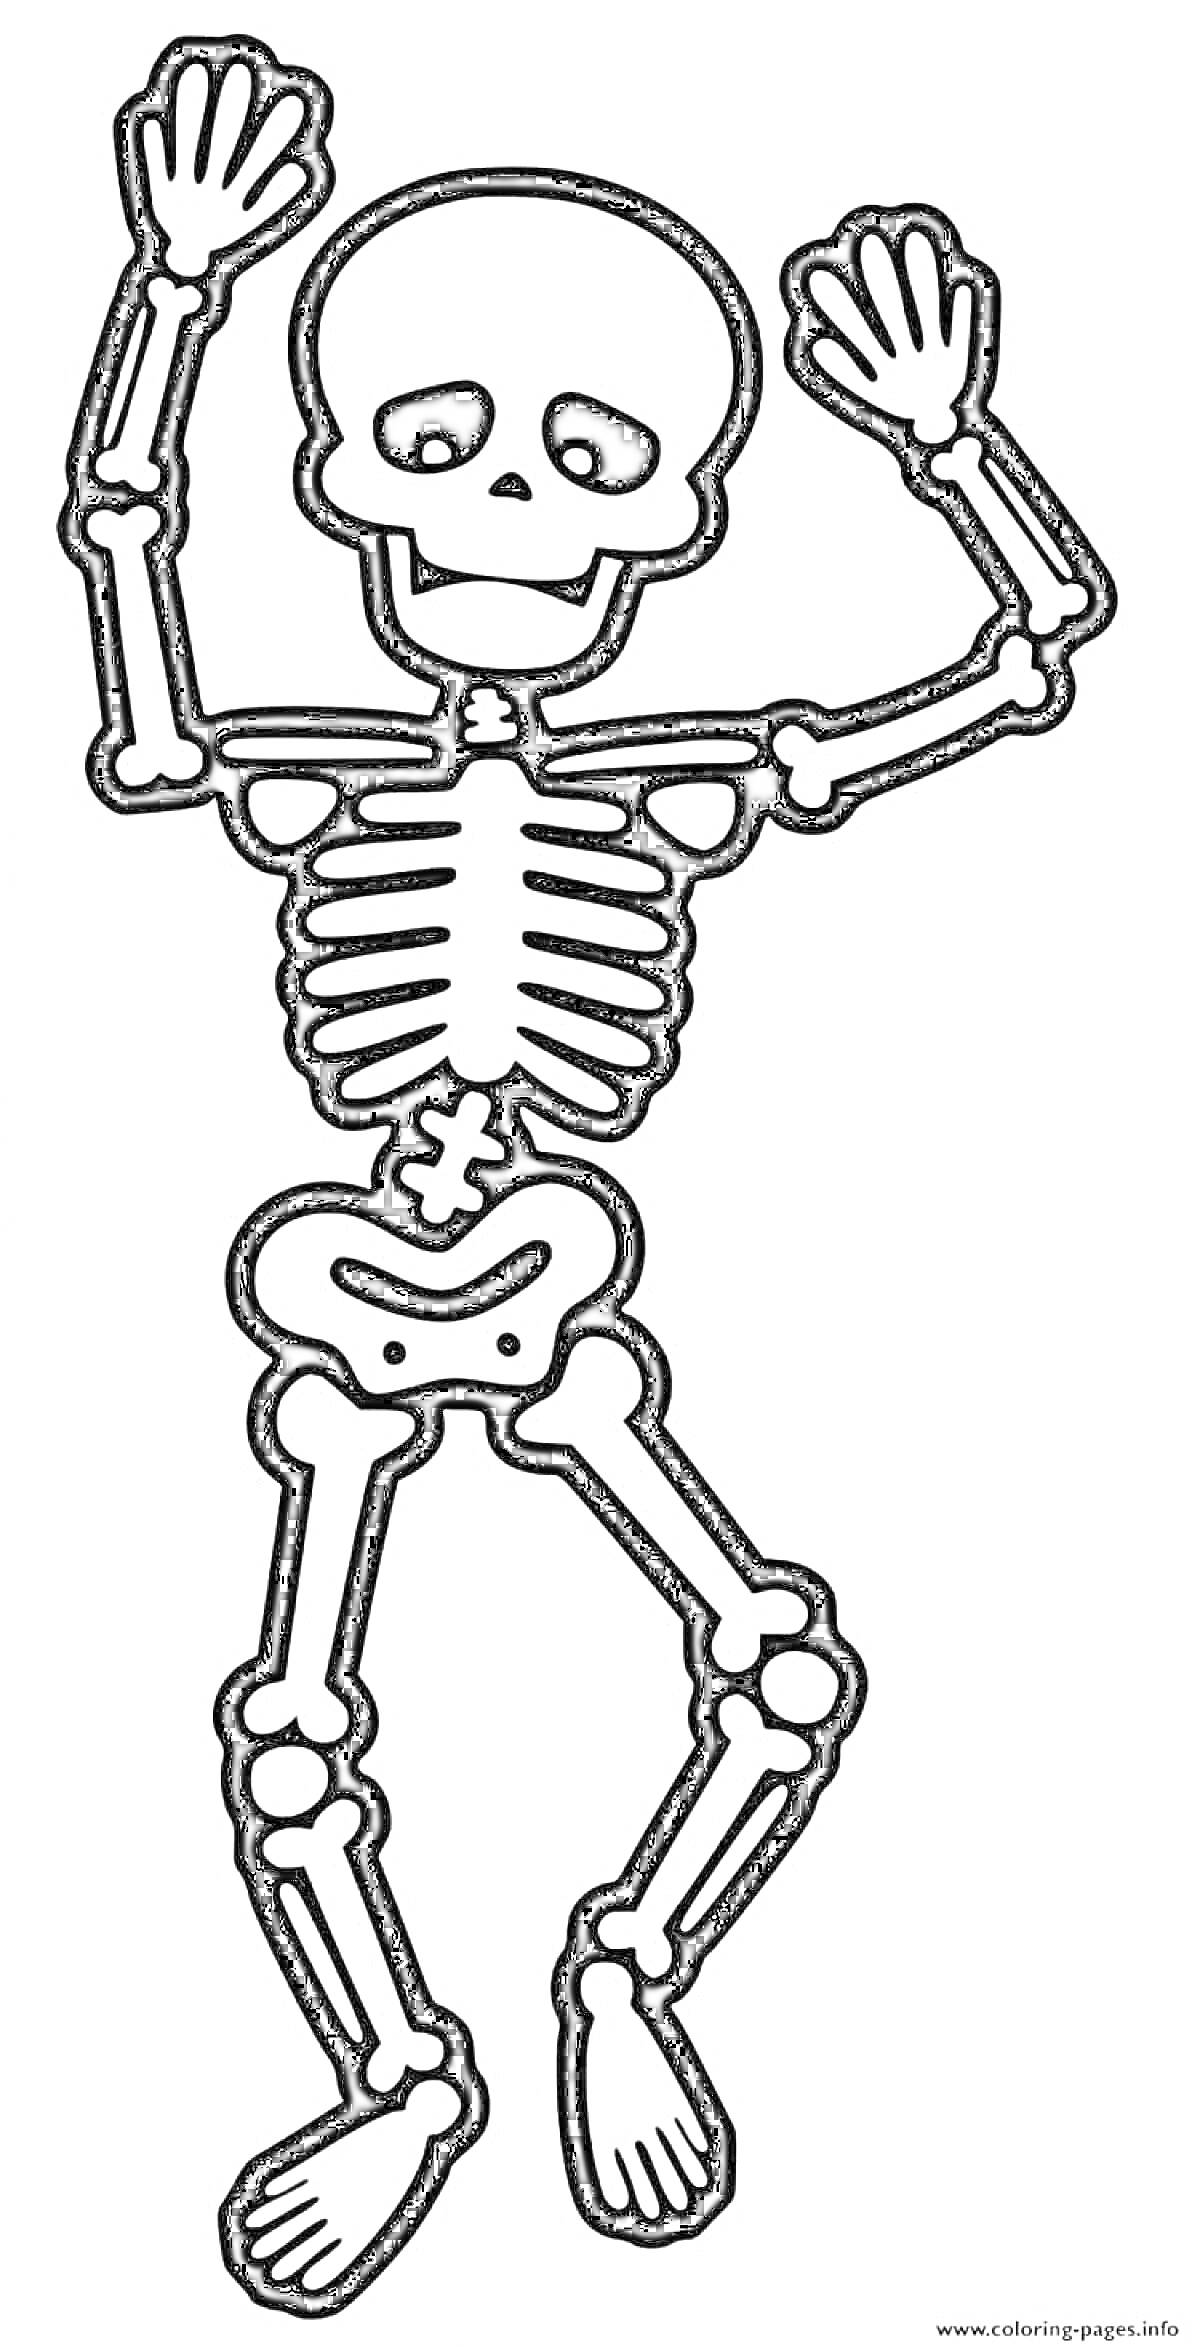 Раскраска скелет в танцующей позе, анатомические элементы включают череп, ребра, позвоночник, руки, запястья, кисти, бедренные кости, голени и стопы.